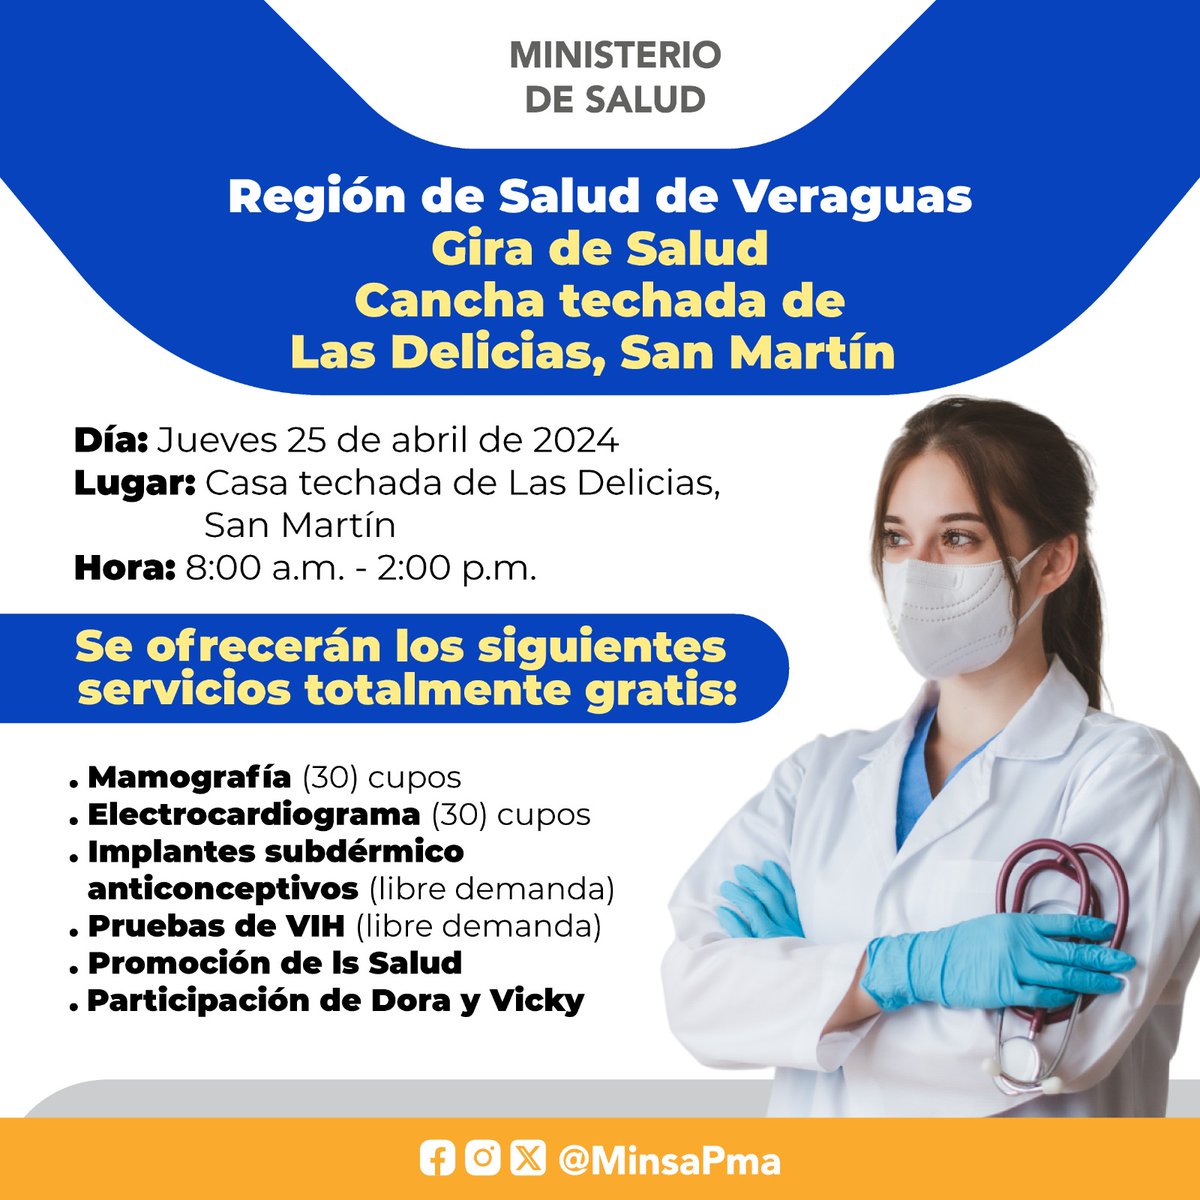 Participa de la Jornada de Salud, el 25 de abril, en San Martín, desde las 8:00 a.m., en donde ofreceremos diferentes servicios de salud totalmente gratis.